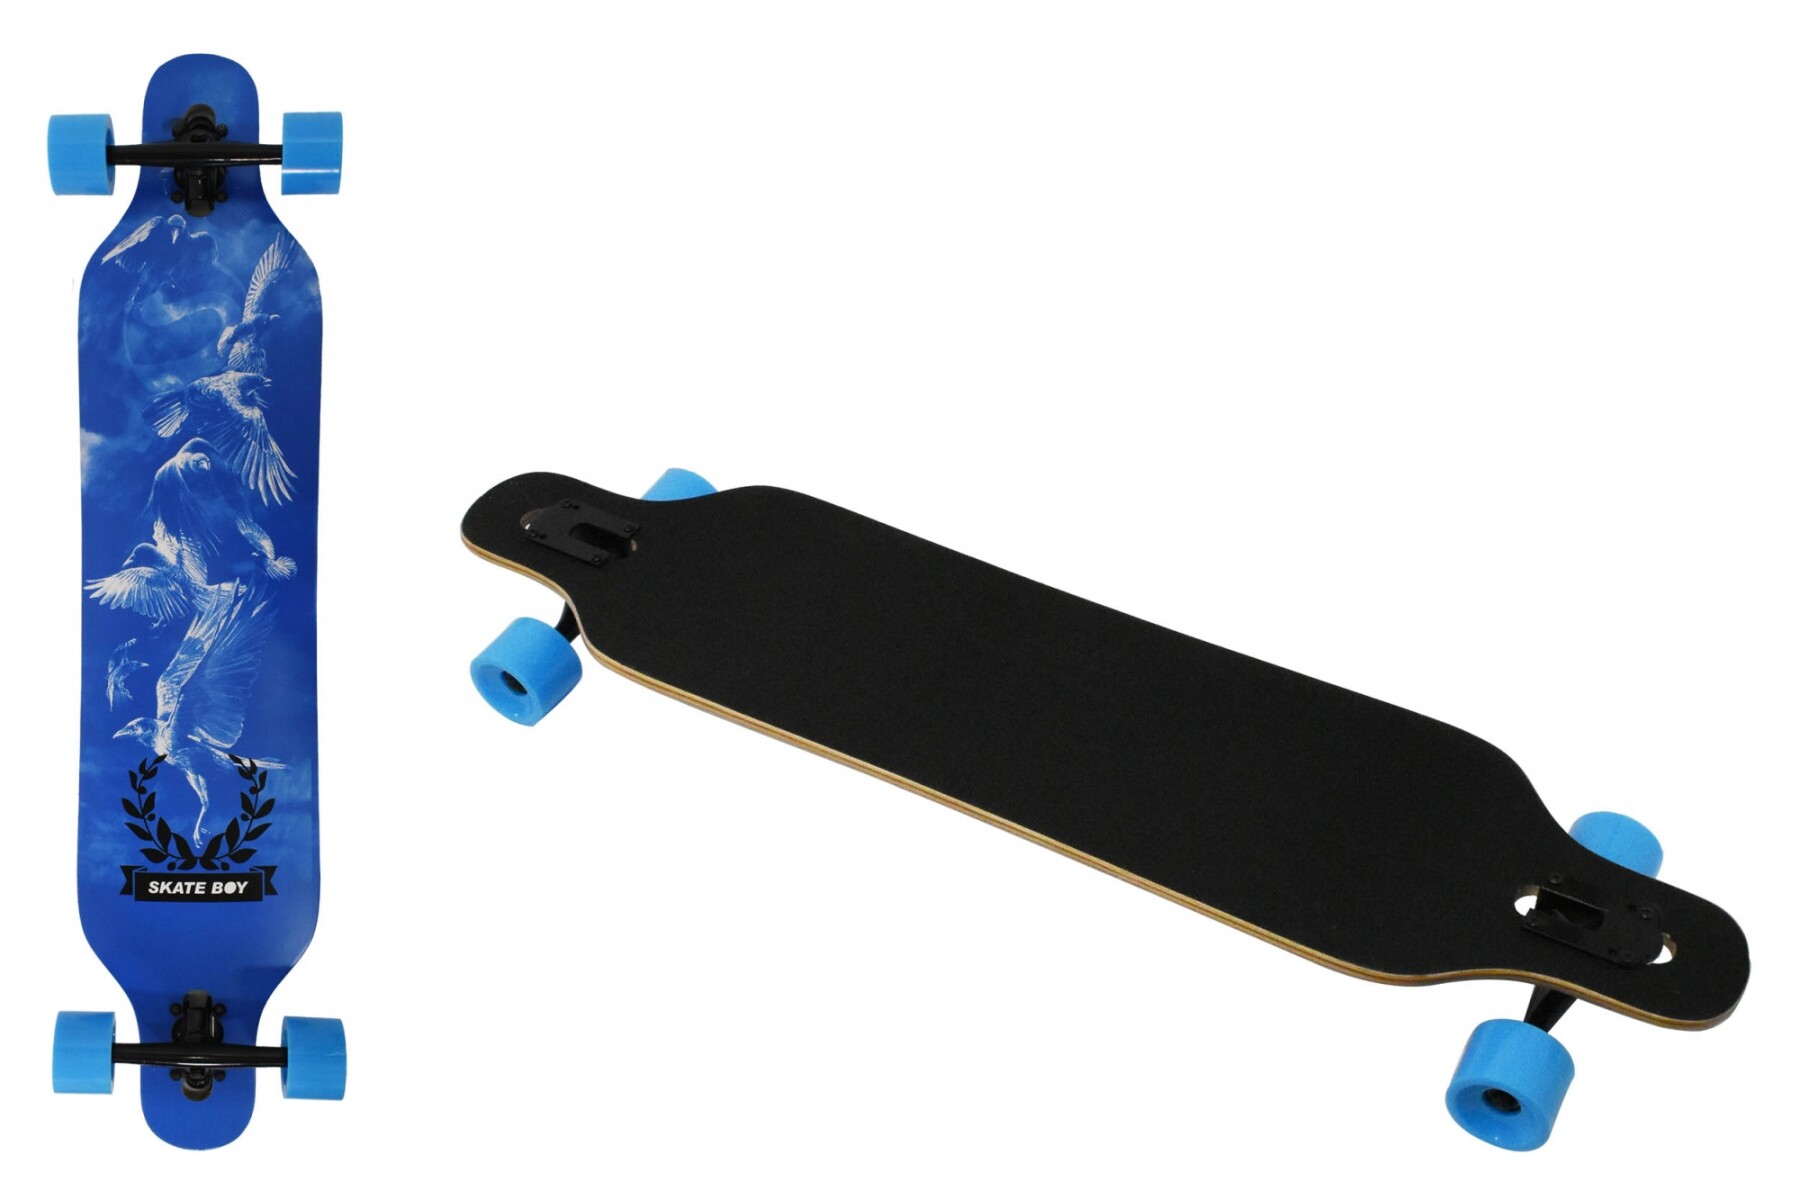 Skate long board. 